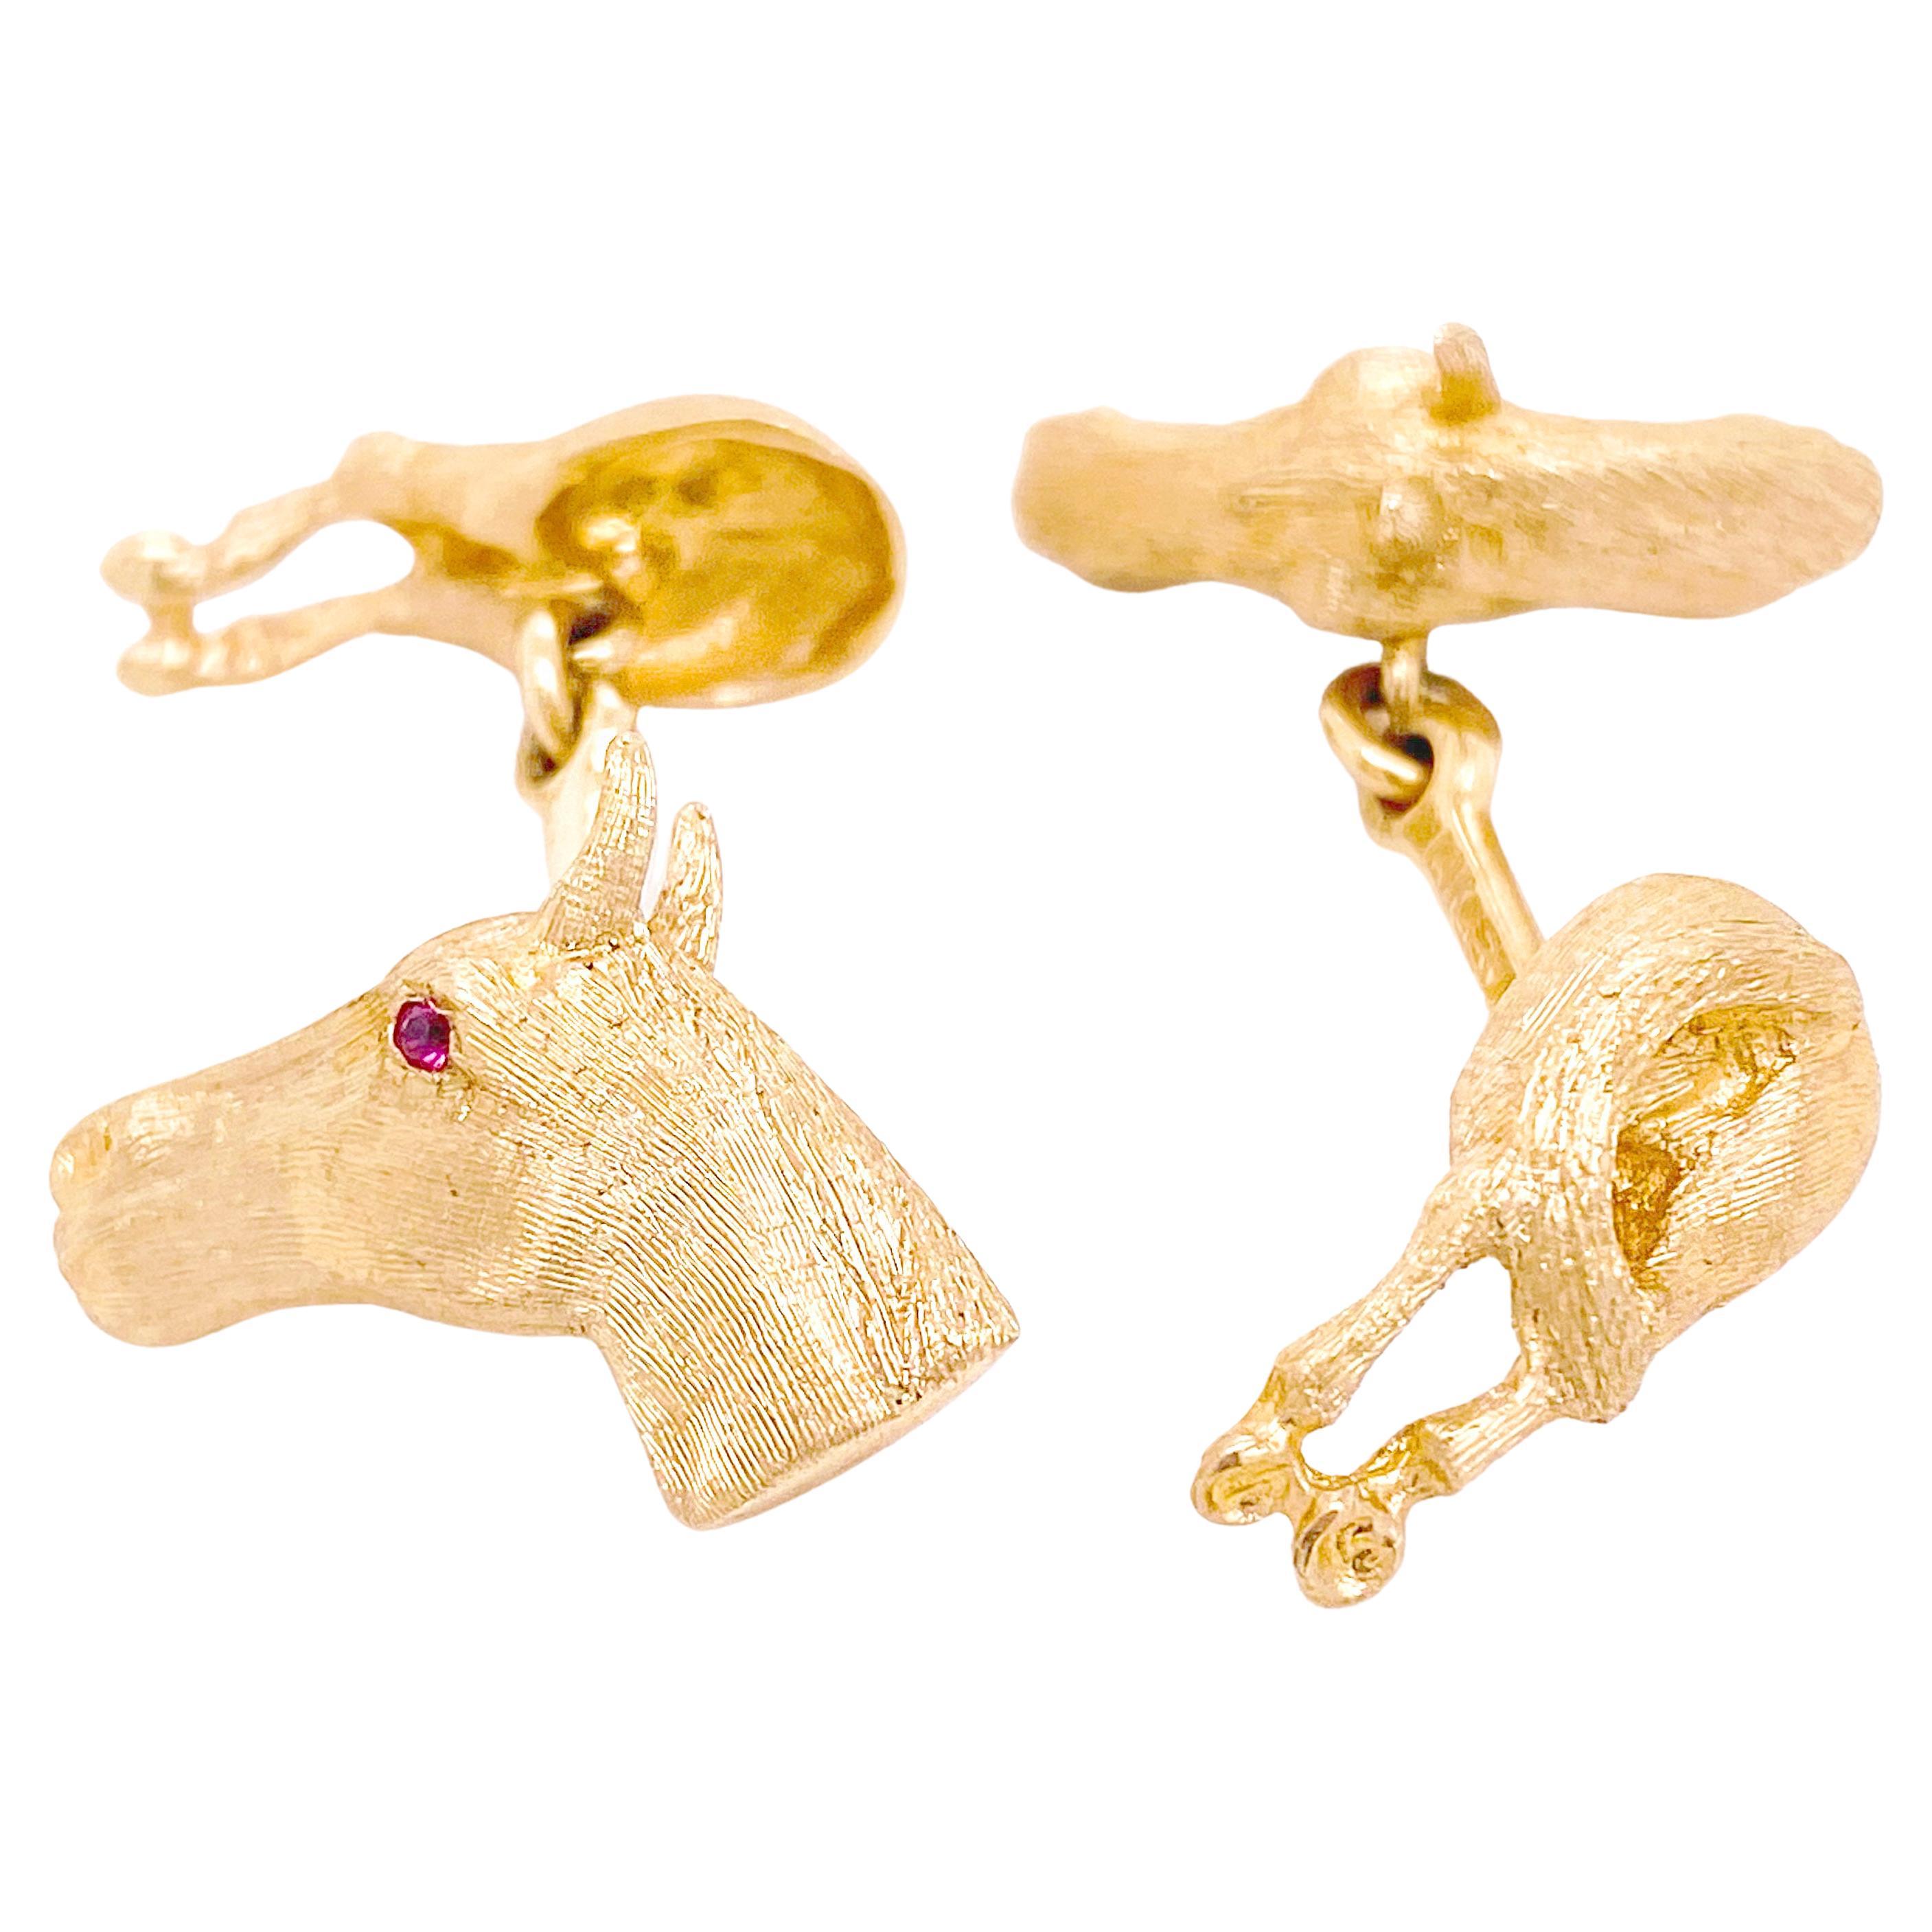 Manschettenknöpfe mit Pferdekopf und Schädel mit Rubin-Augen aus massivem 14 K Gelbgold Reiter